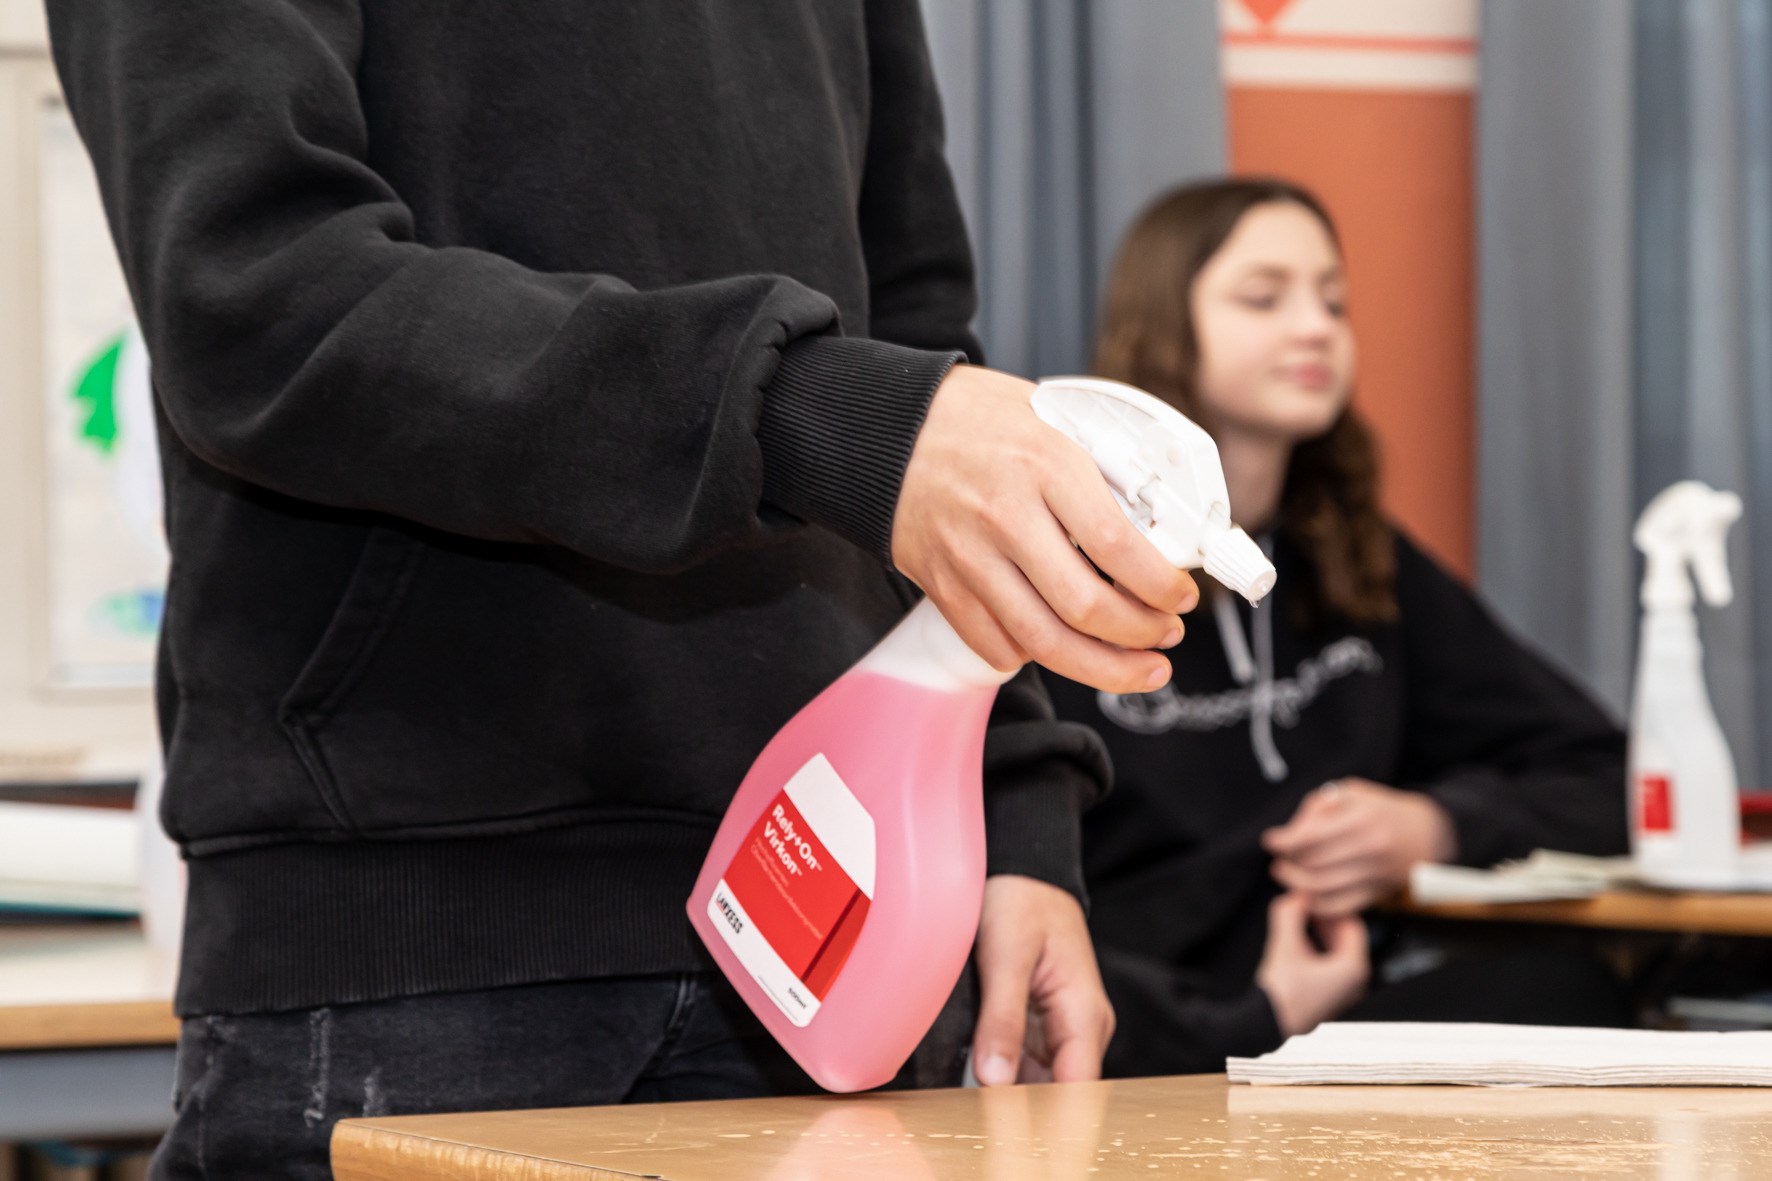 朗盛教育项目的负责人妮娜·哈森坎普向科隆埃伦菲尔德的geschwister - scholl - realschool的女校长和该市学校部门的负责人罗伯特·福格斯特伯格赠送了一个装有消毒剂Rely+On Virkon的包裹。